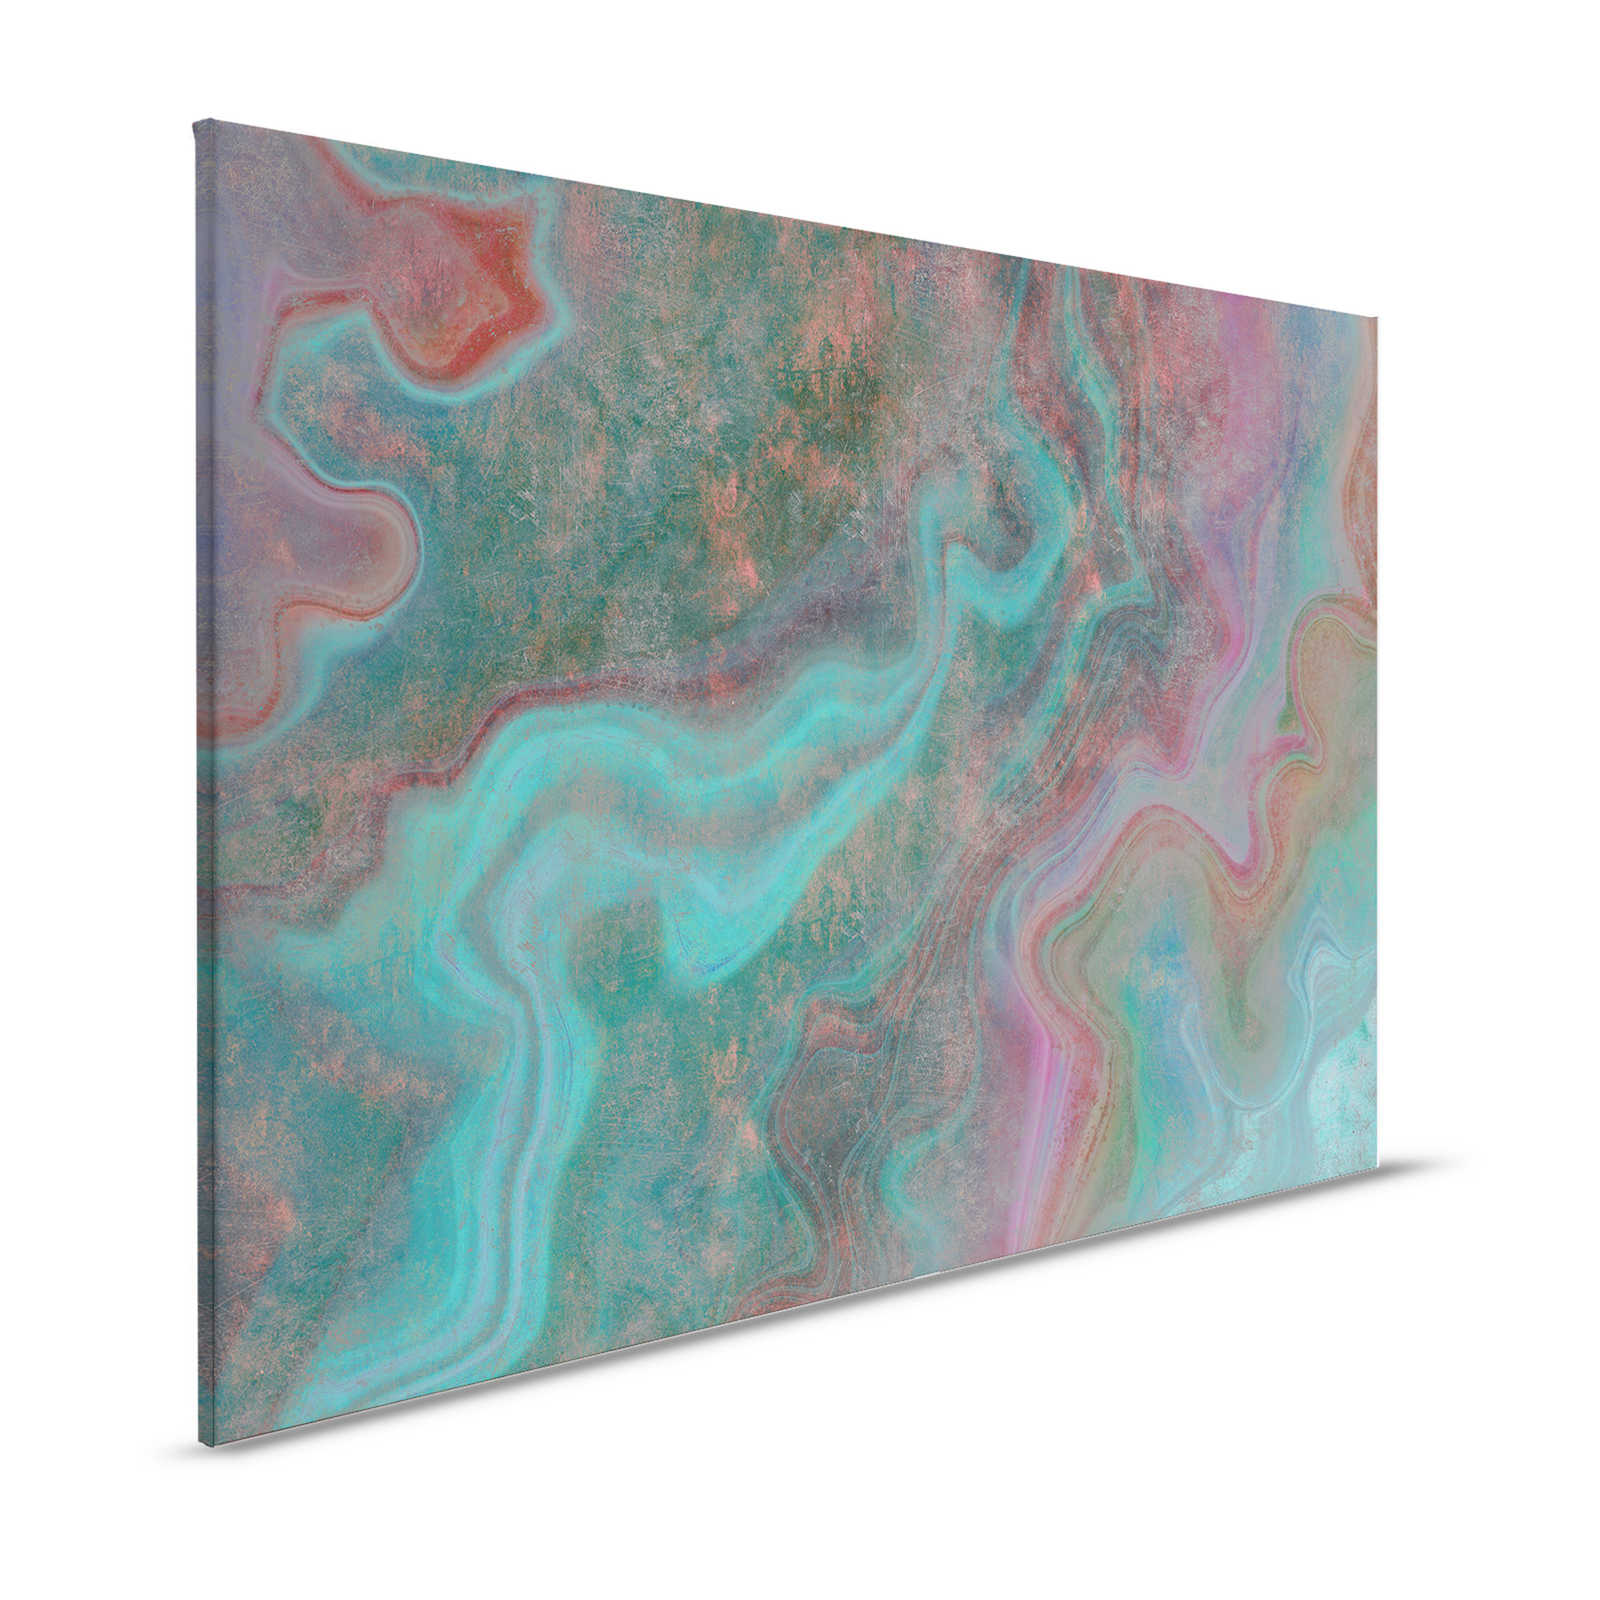 Mármol 3 - Pintura sobre lienzo con estructura rayada en colorido aspecto de mármol como realce - 1,20 m x 0,80 m
